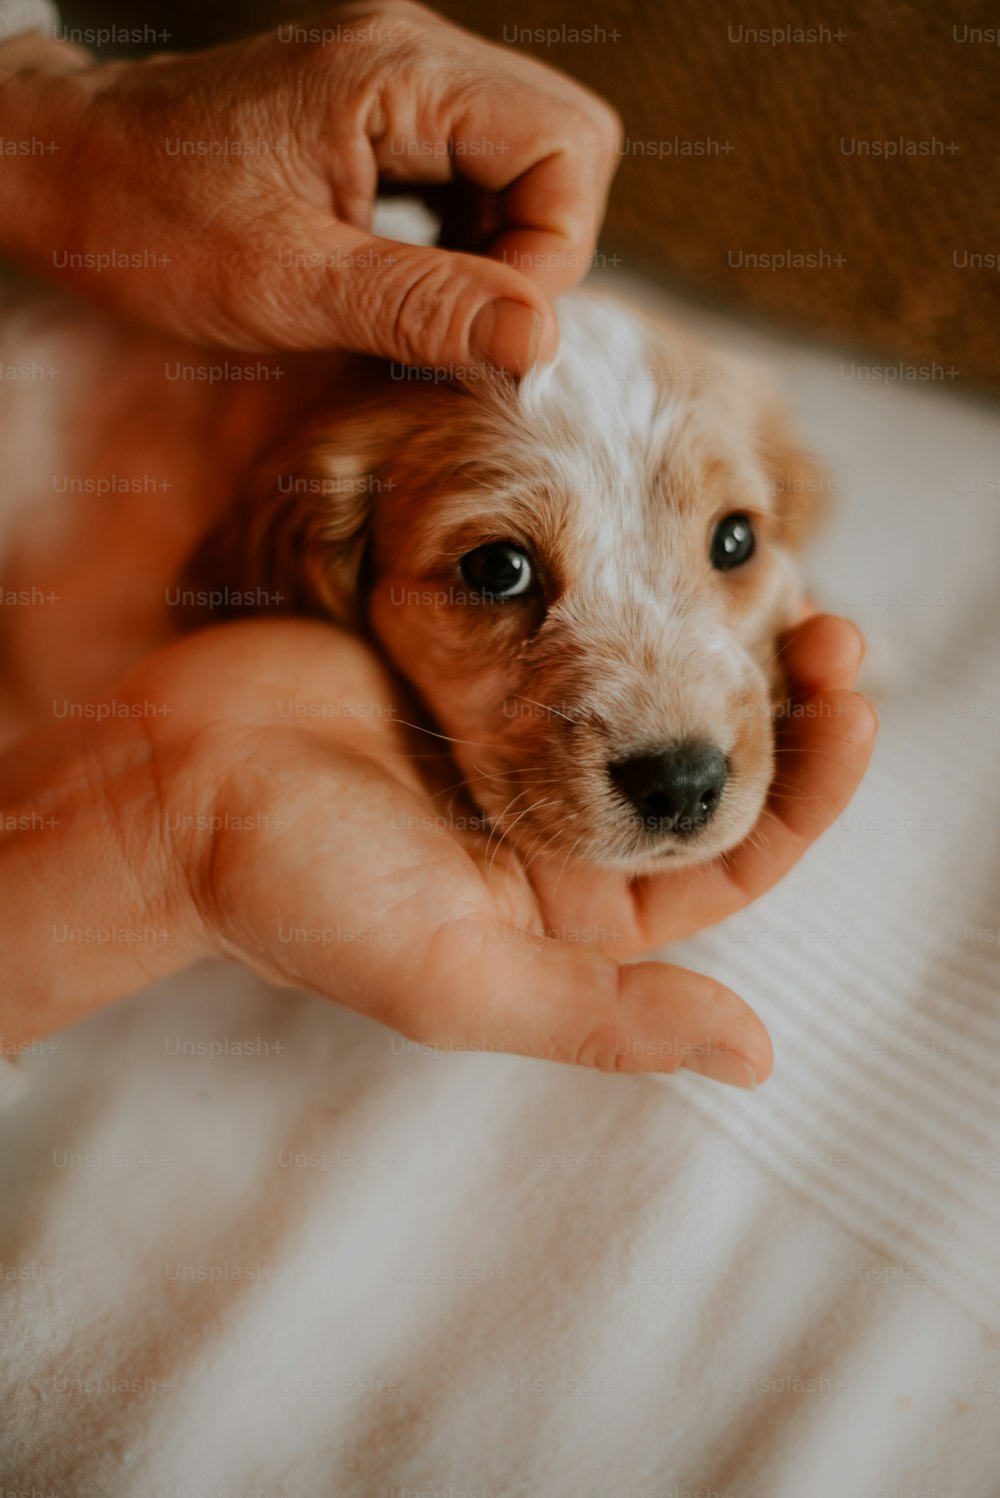 una persona sosteniendo un perro pequeño en sus manos